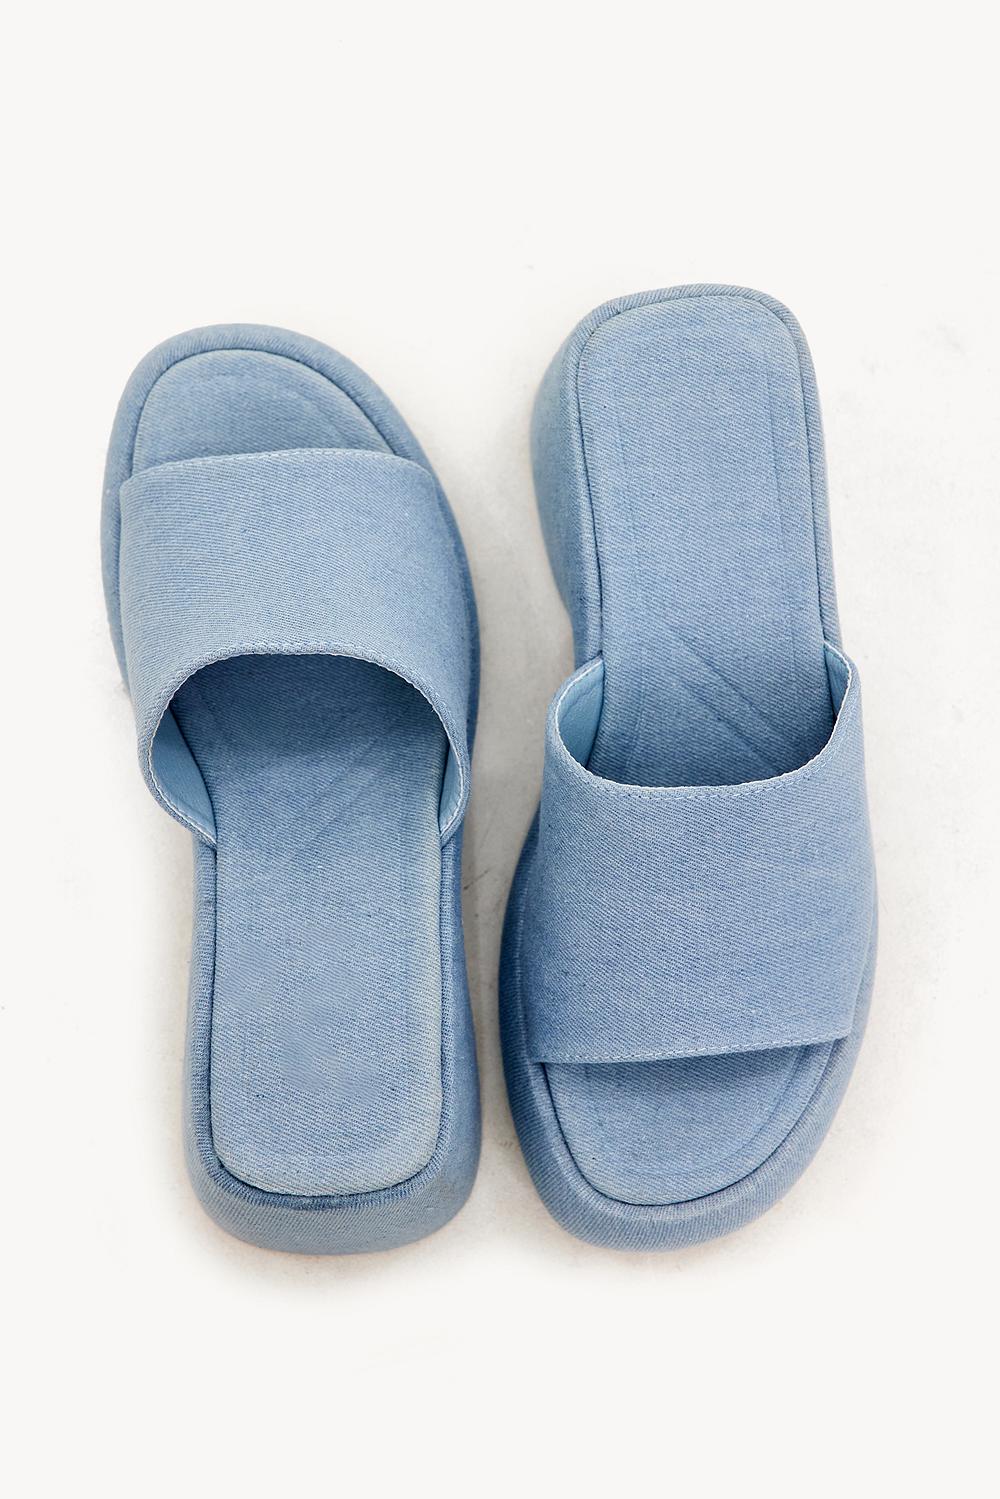 Blauwe denim slippers